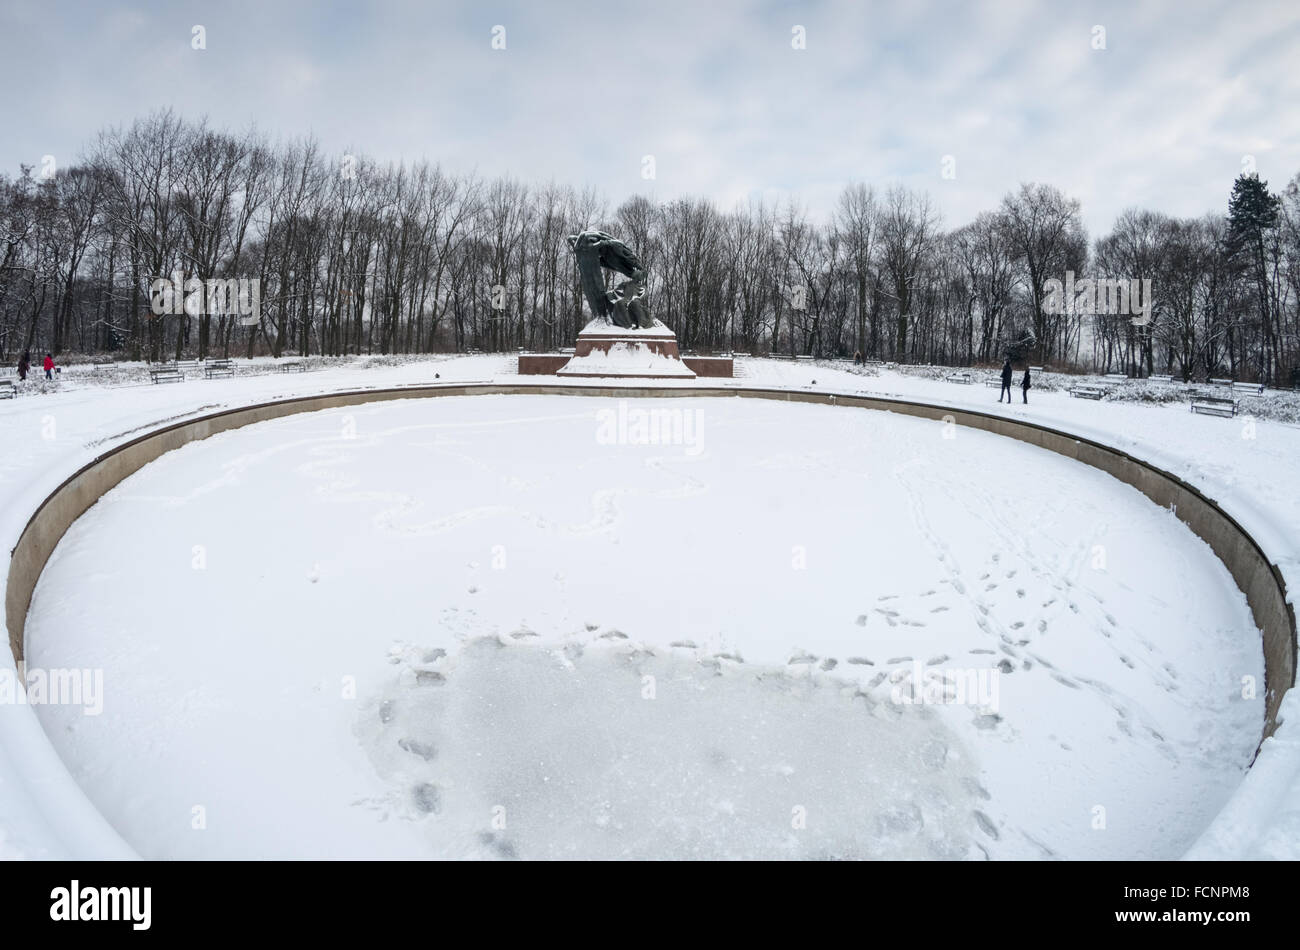 Monument to Frederic Chopin in winter, Łazienki Królewskie (Royal Lazienki Park), Warsaw, Poland Stock Photo